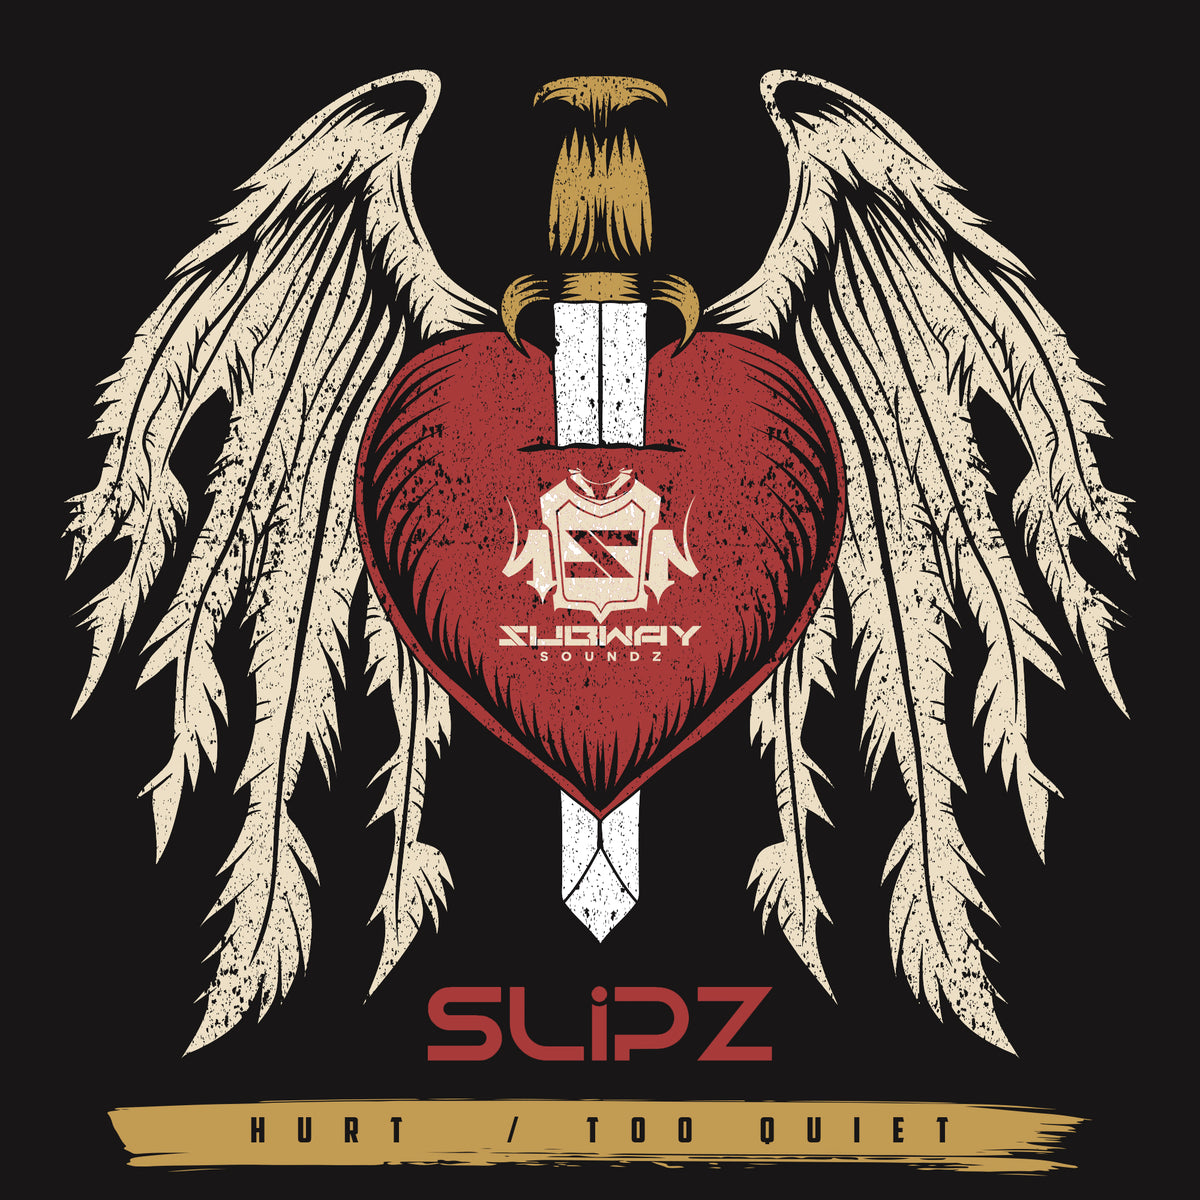 SSLD 057 - Slipz 'Hurt' | 'Too Quiet'